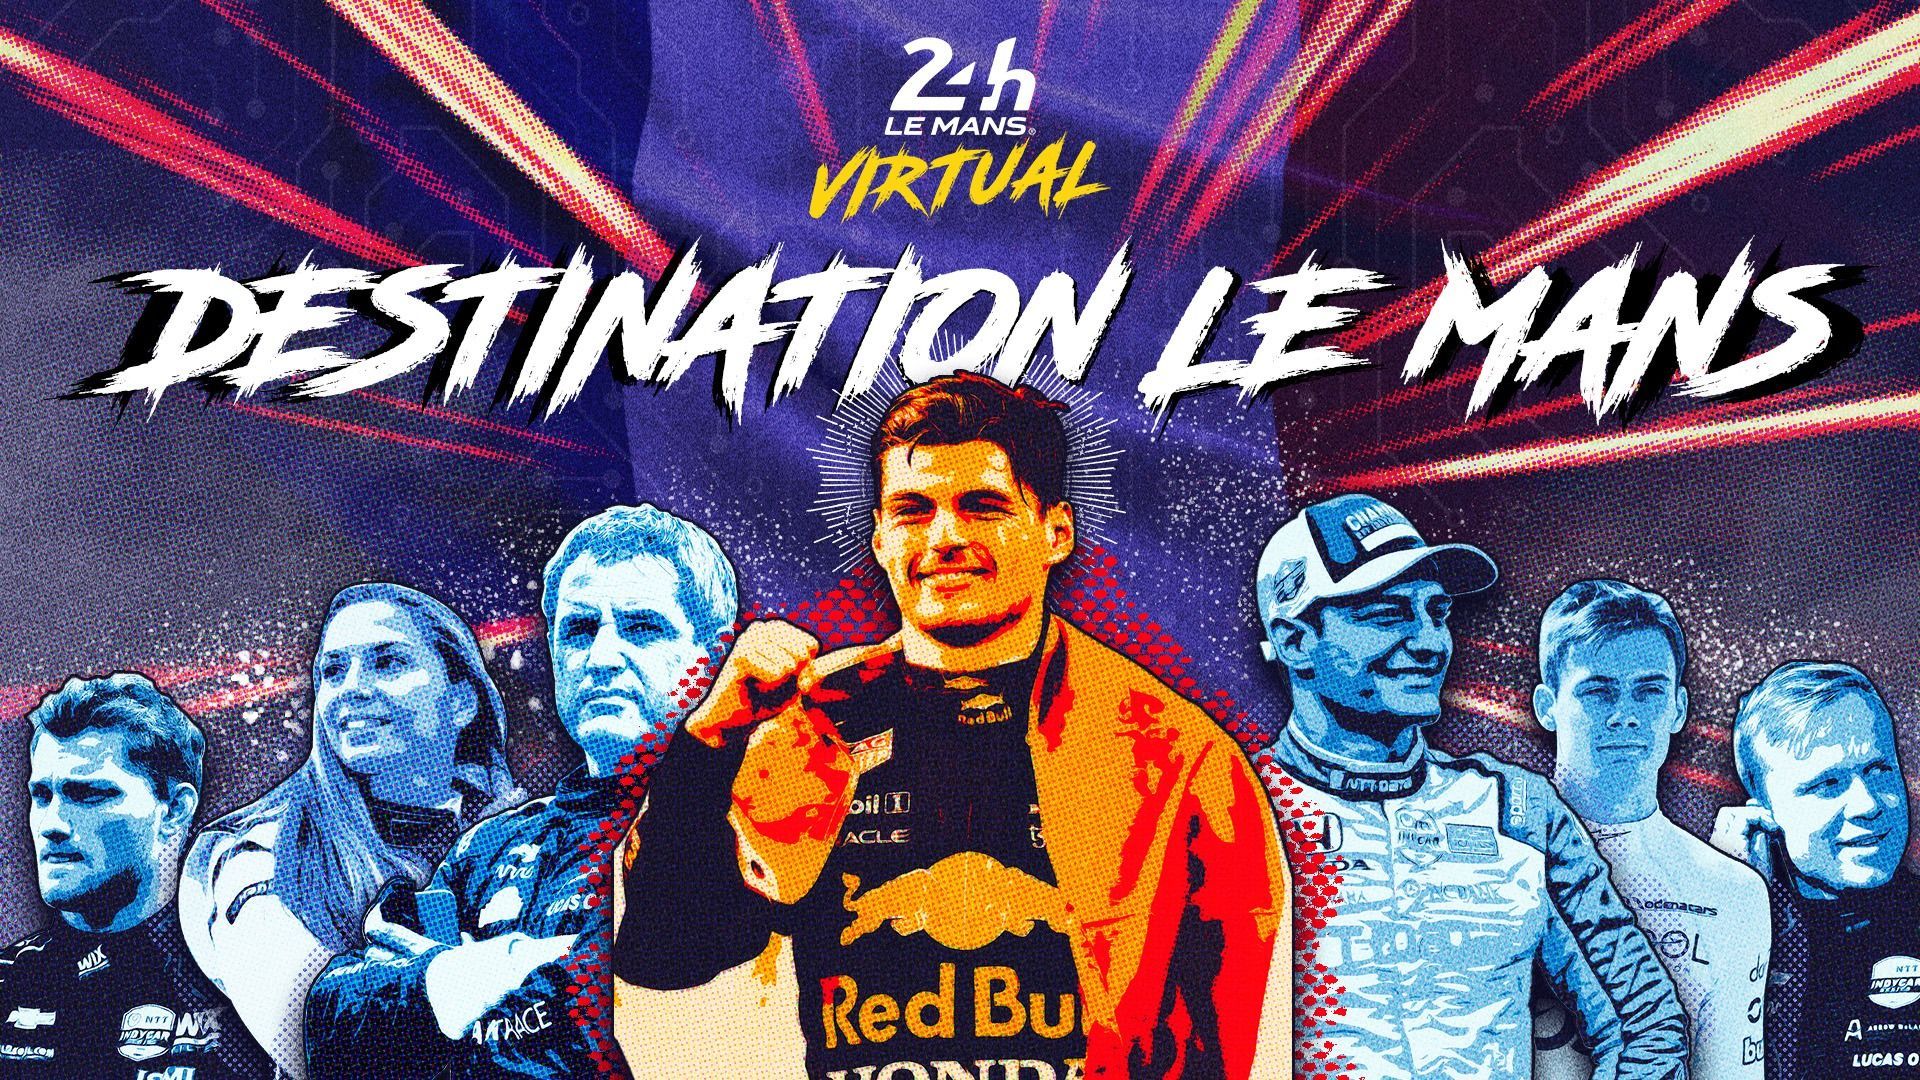 Max Verstappen au départ des 24 Heures du Mans virtuelles